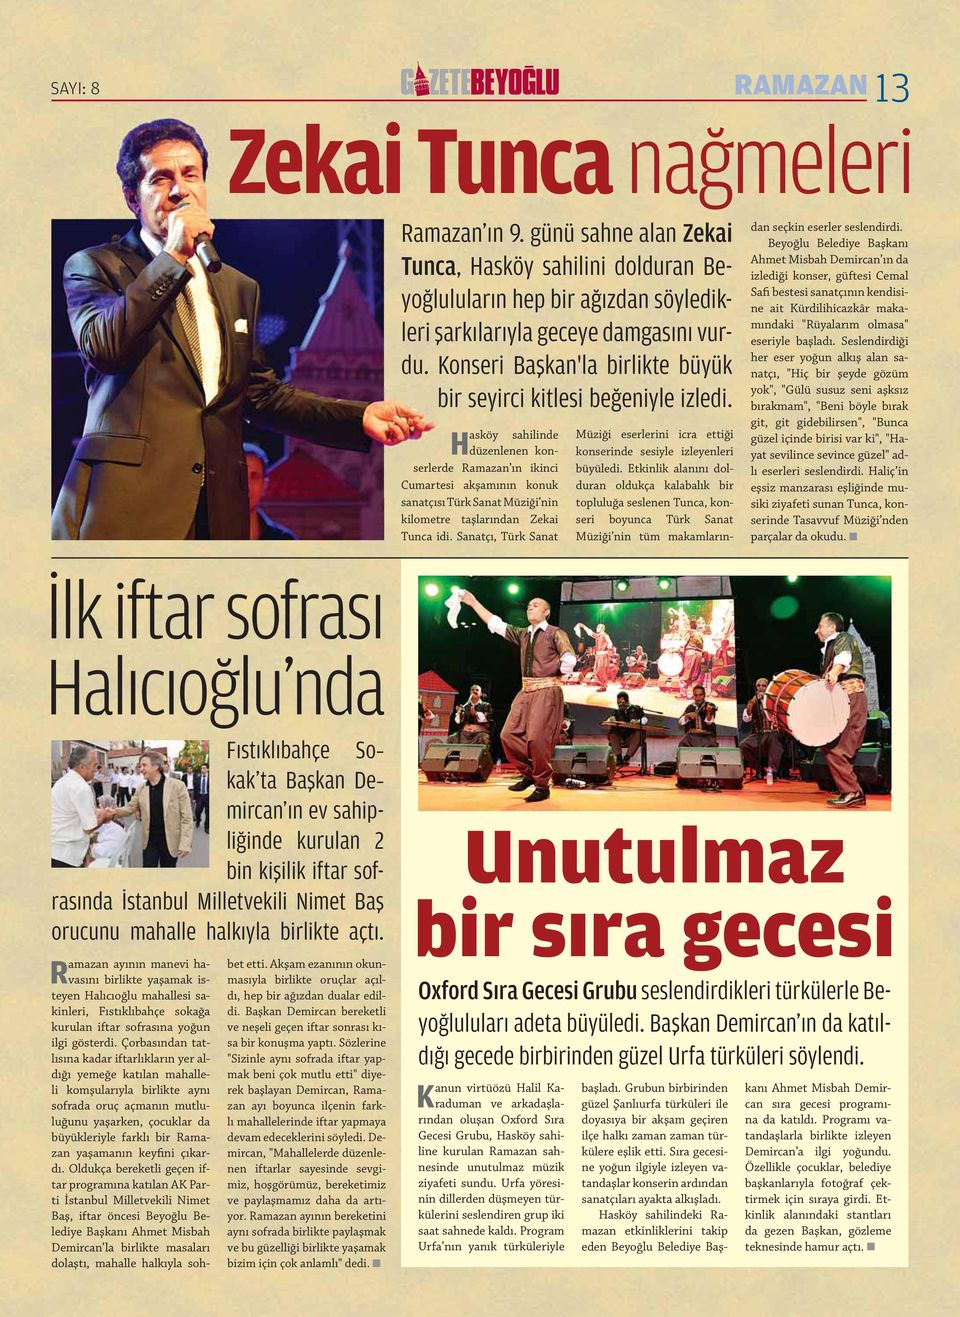 Hasköy sahilinde düzenlenen konserlerde Rama zan ın ikinci Cumartesi akşamının konuk sanatçısı Türk Sanat Müziği nin kilometre taş larından Zekai Tunca idi.